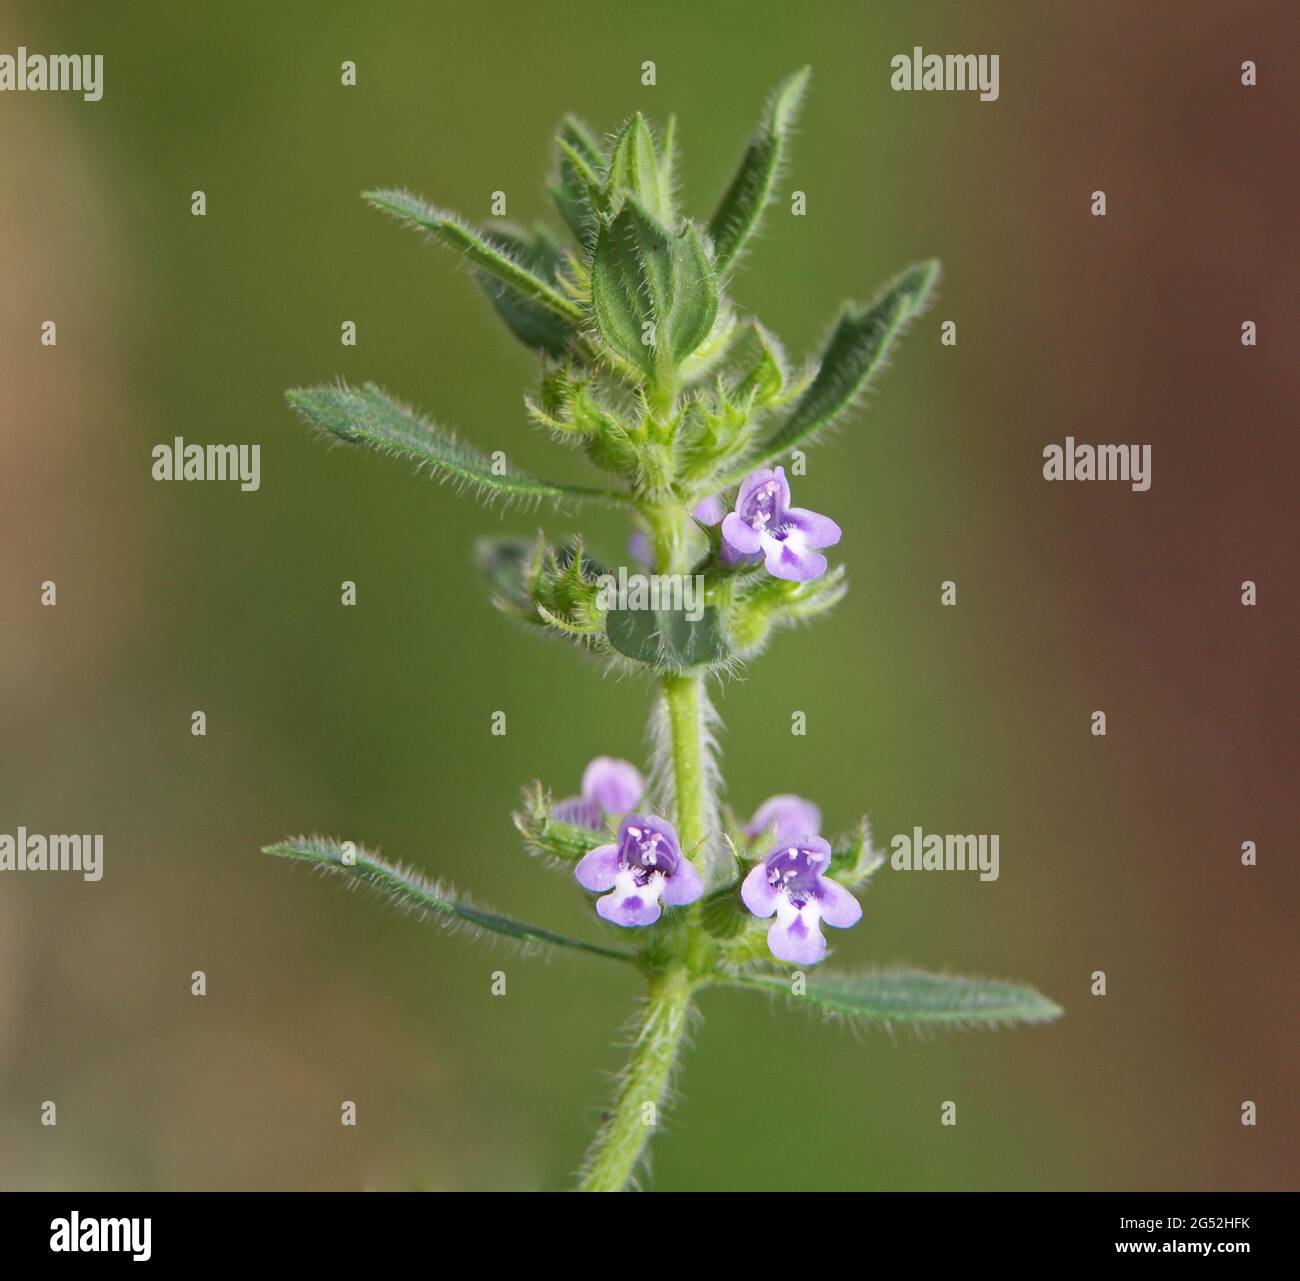 Basil thyme or spring savory, Clinopodium acinos Stock Photo